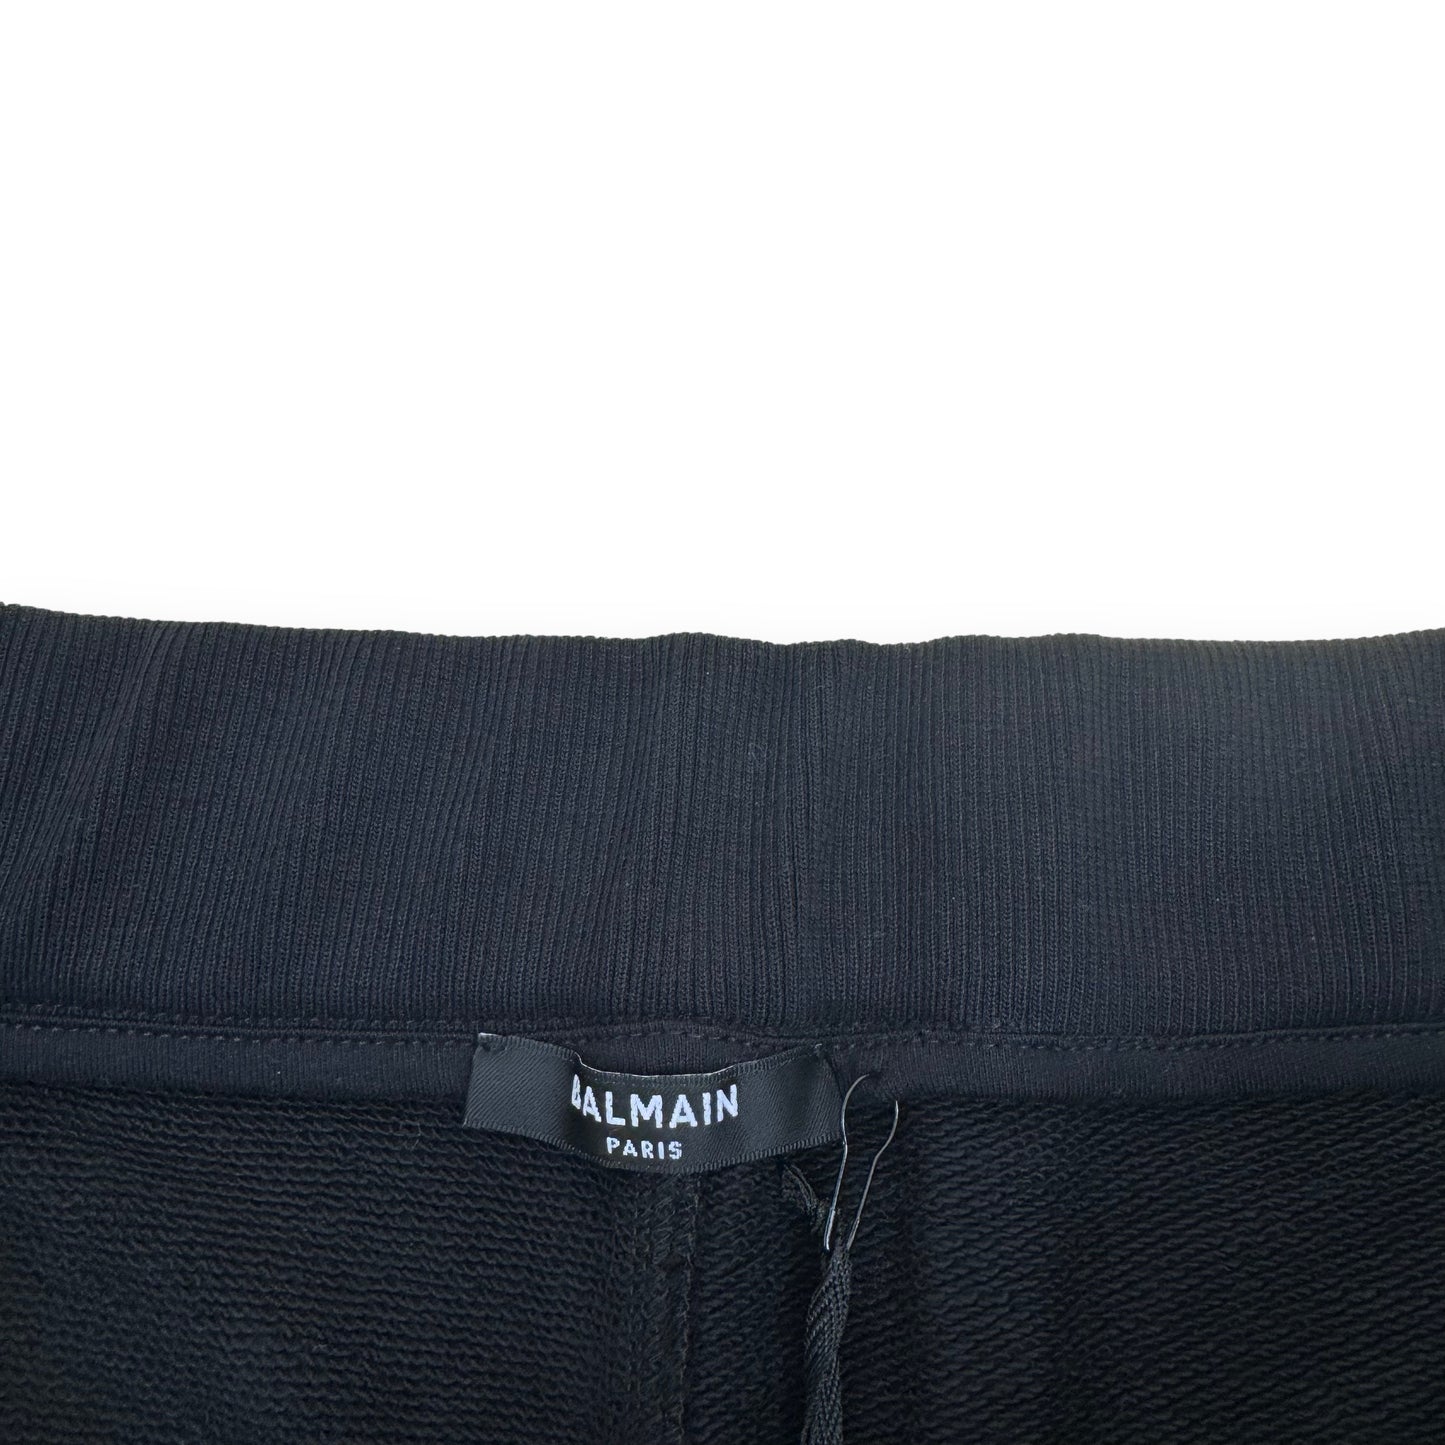 BALMAIN EMBOSSED LOGO SWEAT SHORTS BLACK XL